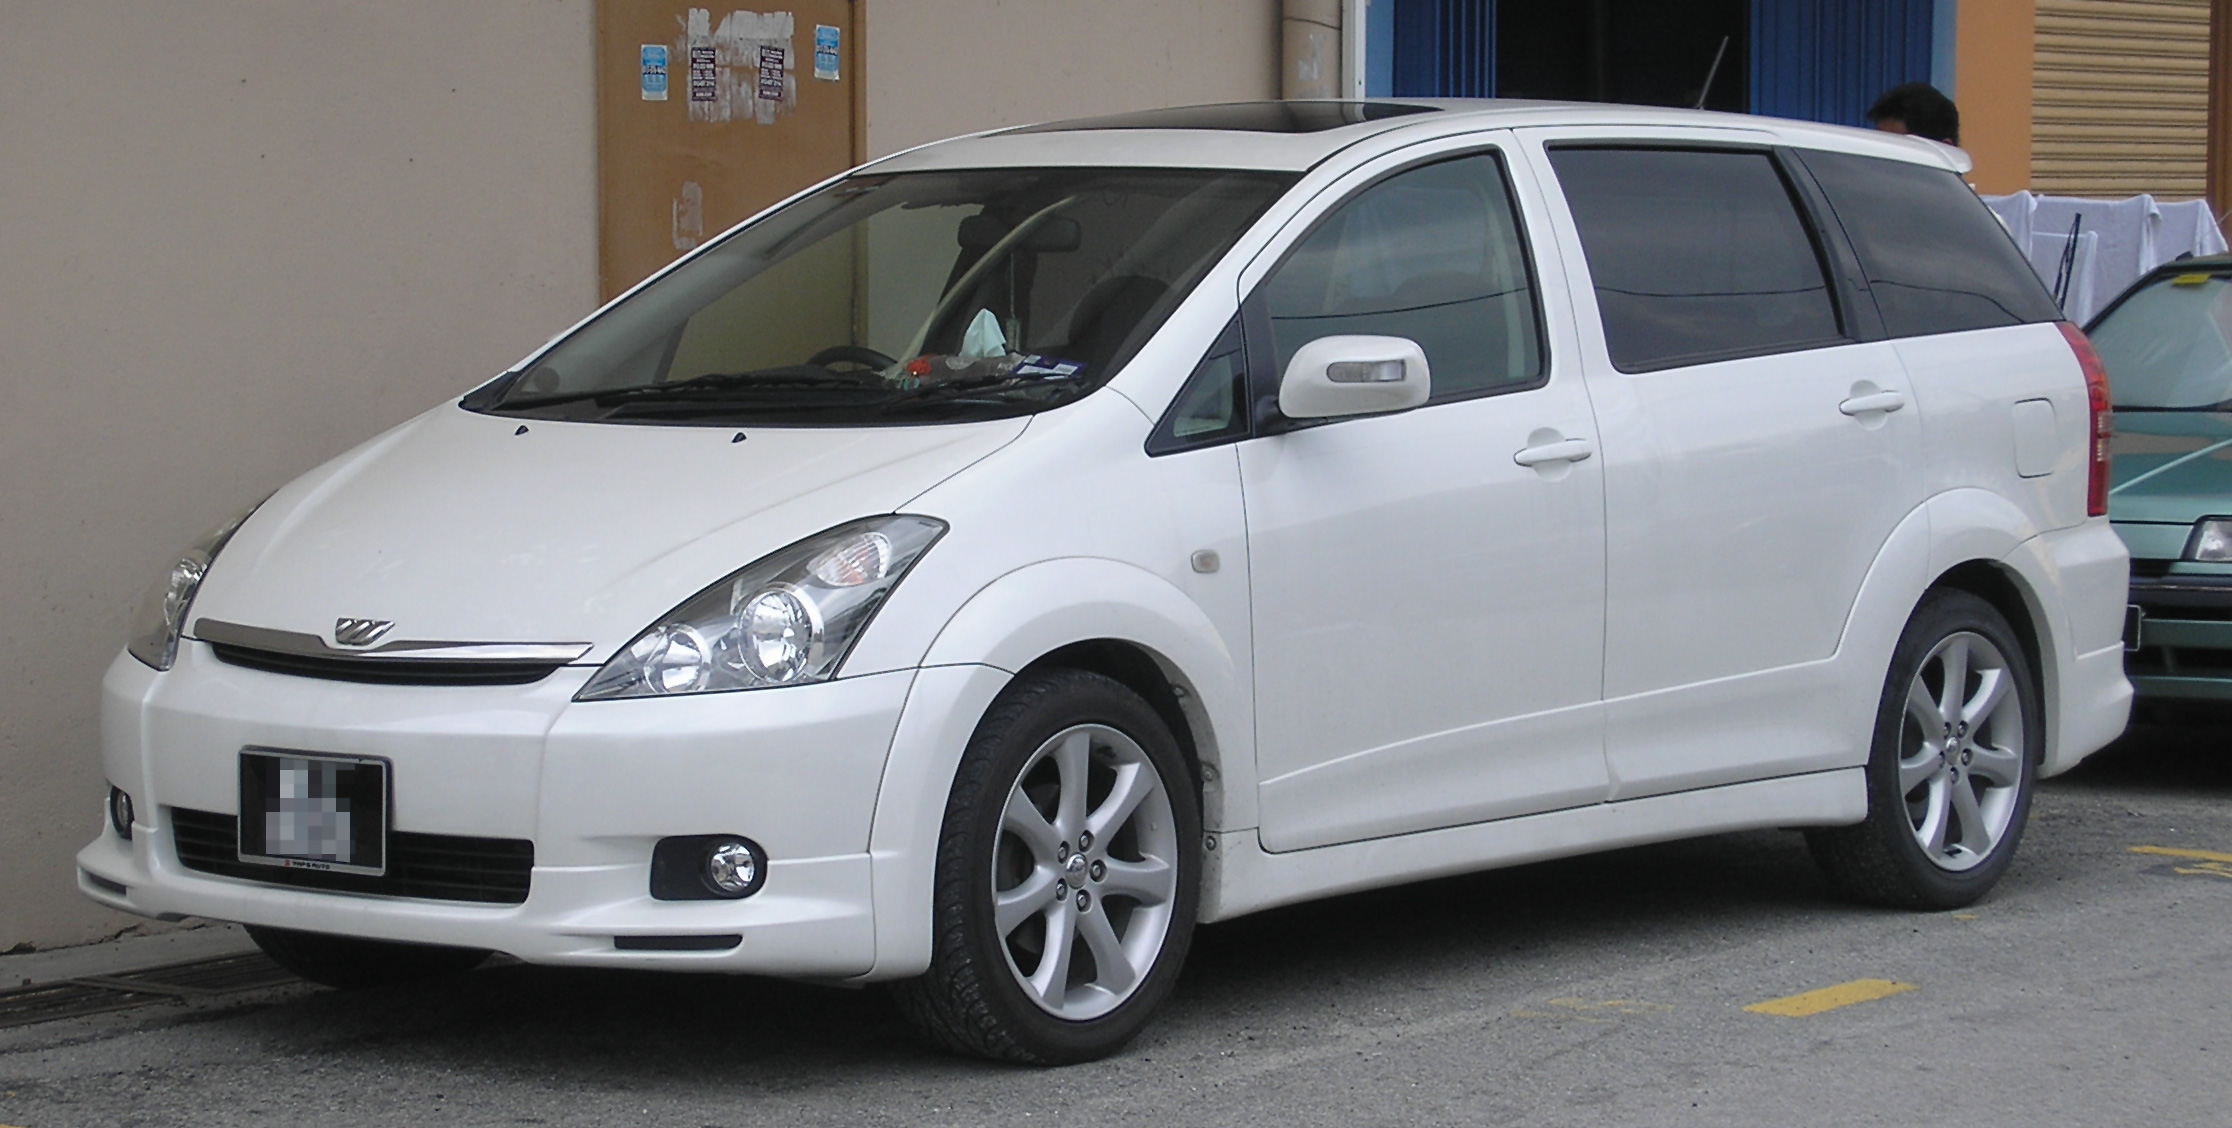 File:Toyota Wish (first generation) (front), Kajang.jpg